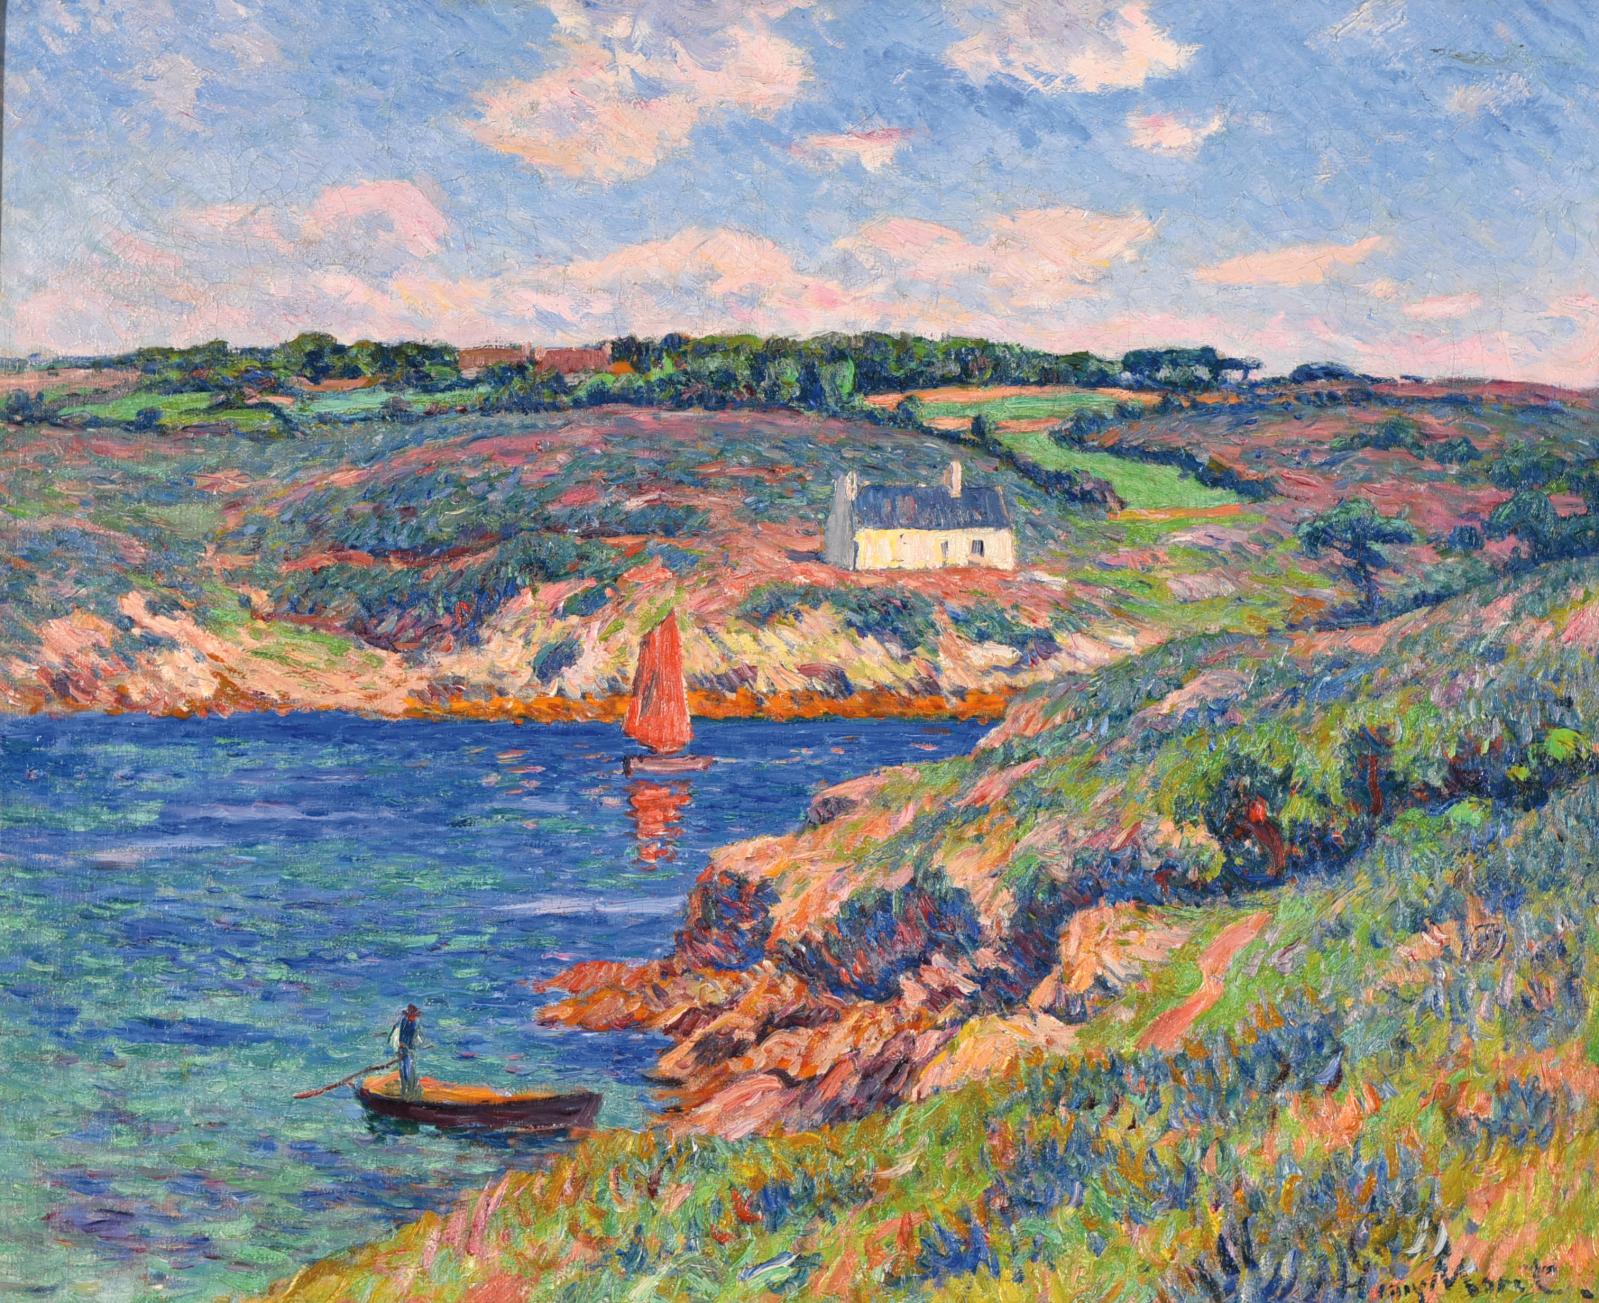 Avec 179 340 €, la très attendue Rivière de Merrien, Finistère 1910 (60 x 73 cm) d’Henry Moret, devait prendre une première place bien méritée en rais